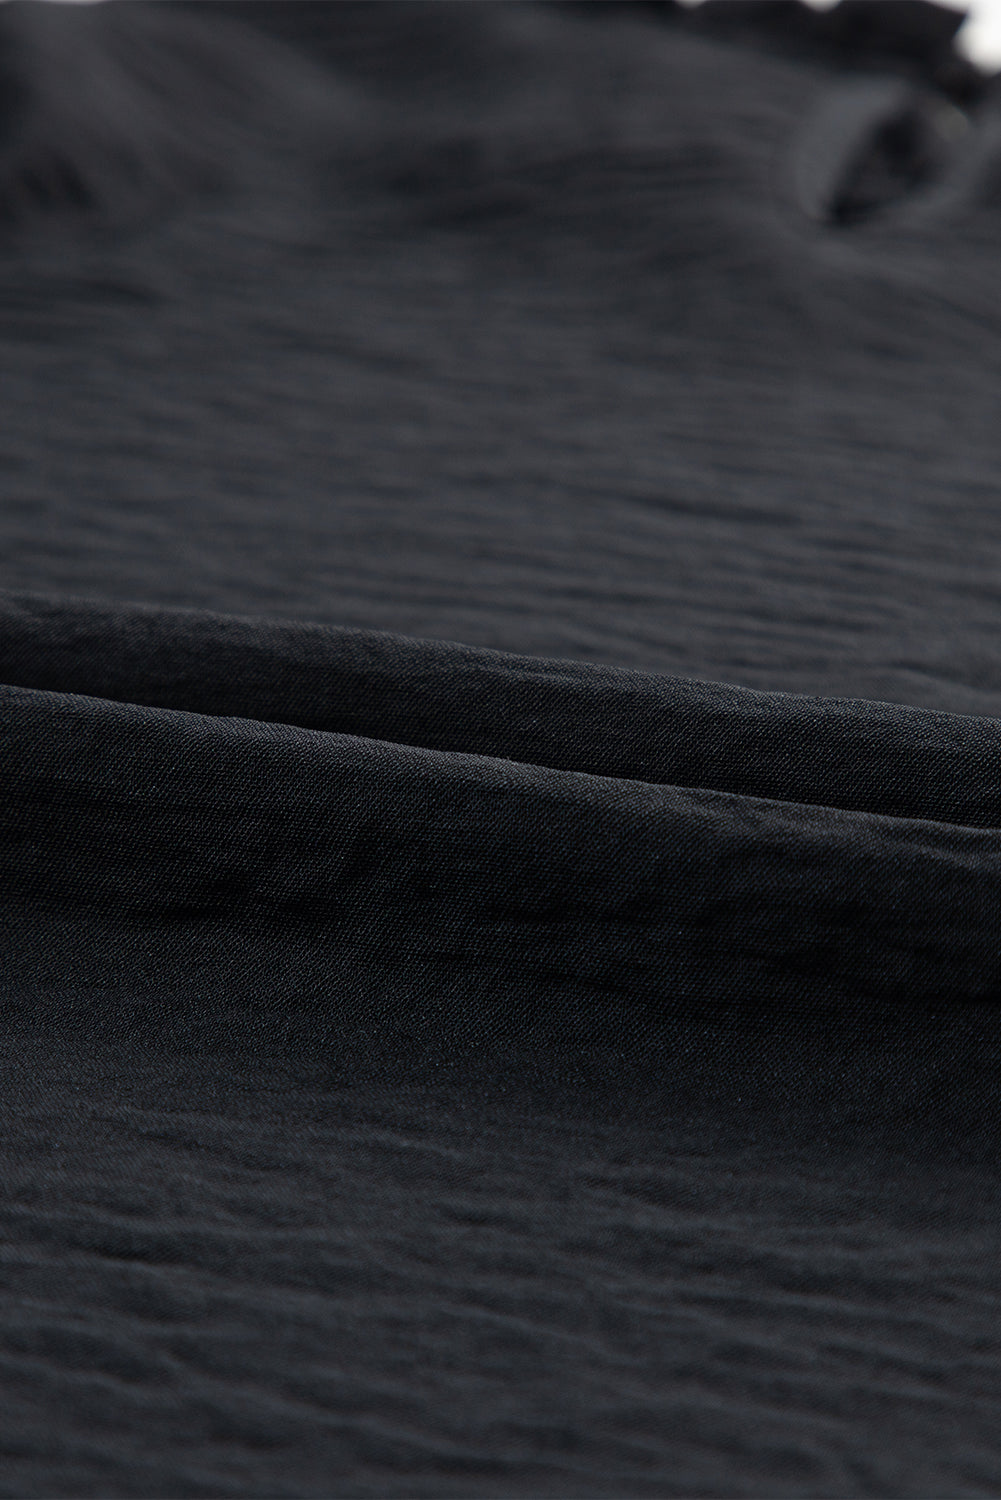 Schwarze Bluse mit Rüschenkragen, Rüschenbesatz und Blasenärmeln